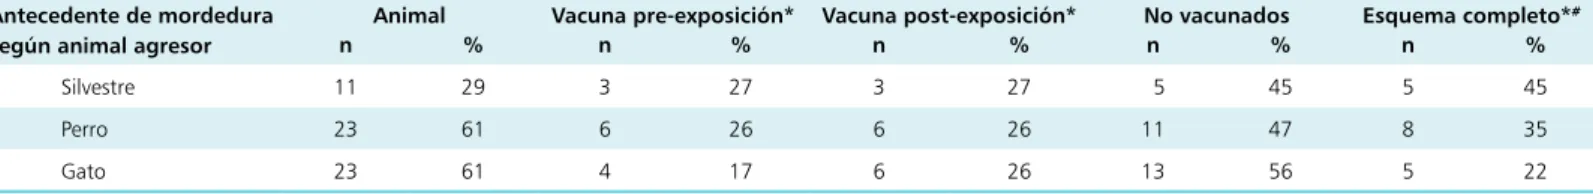 Tabla 1. Proporción de vacunación pre- y post-exposición en veterinarios de animales silvestres con historial de mordedura